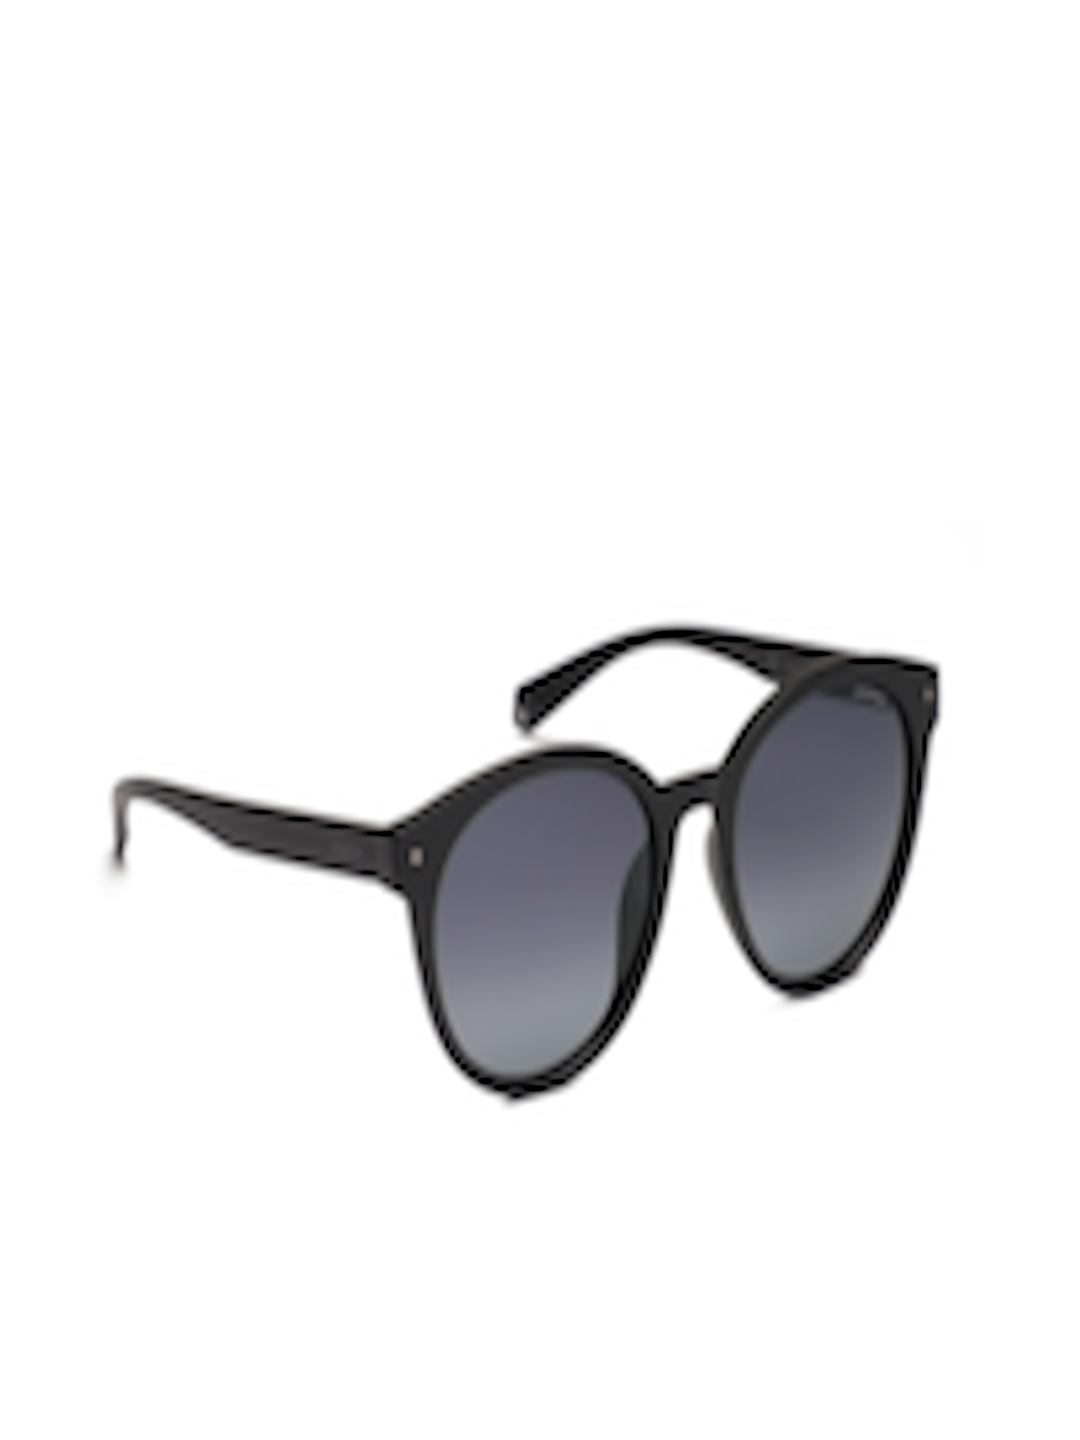 Buy Polaroid Unisex Round Sunglasses PLD 6043 - Sunglasses for Unisex